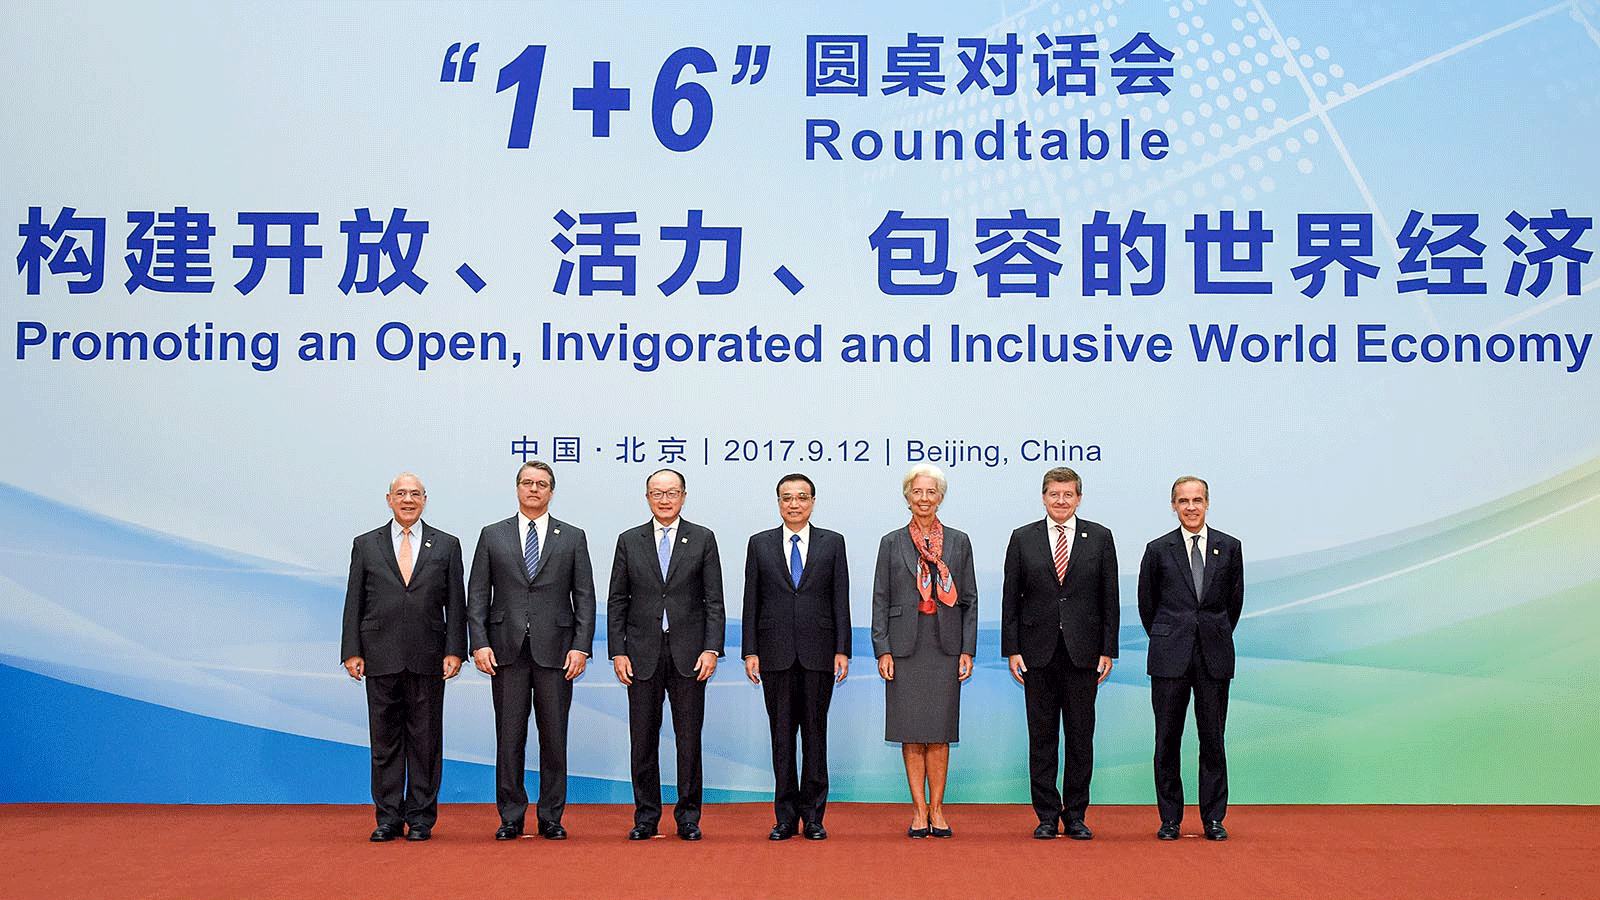 المدير العام لمنظمة التجارة العالمية روبرتو أزيفيدو يلتقي برئيس الوزراء الصيني لي كه تشيانغ، وقادة صندوق النقد الدولي ومنظمة التعاون الاقتصادي والتنمية والبنك الدولي في بكين. في أيلول/سبتمبر 2017.